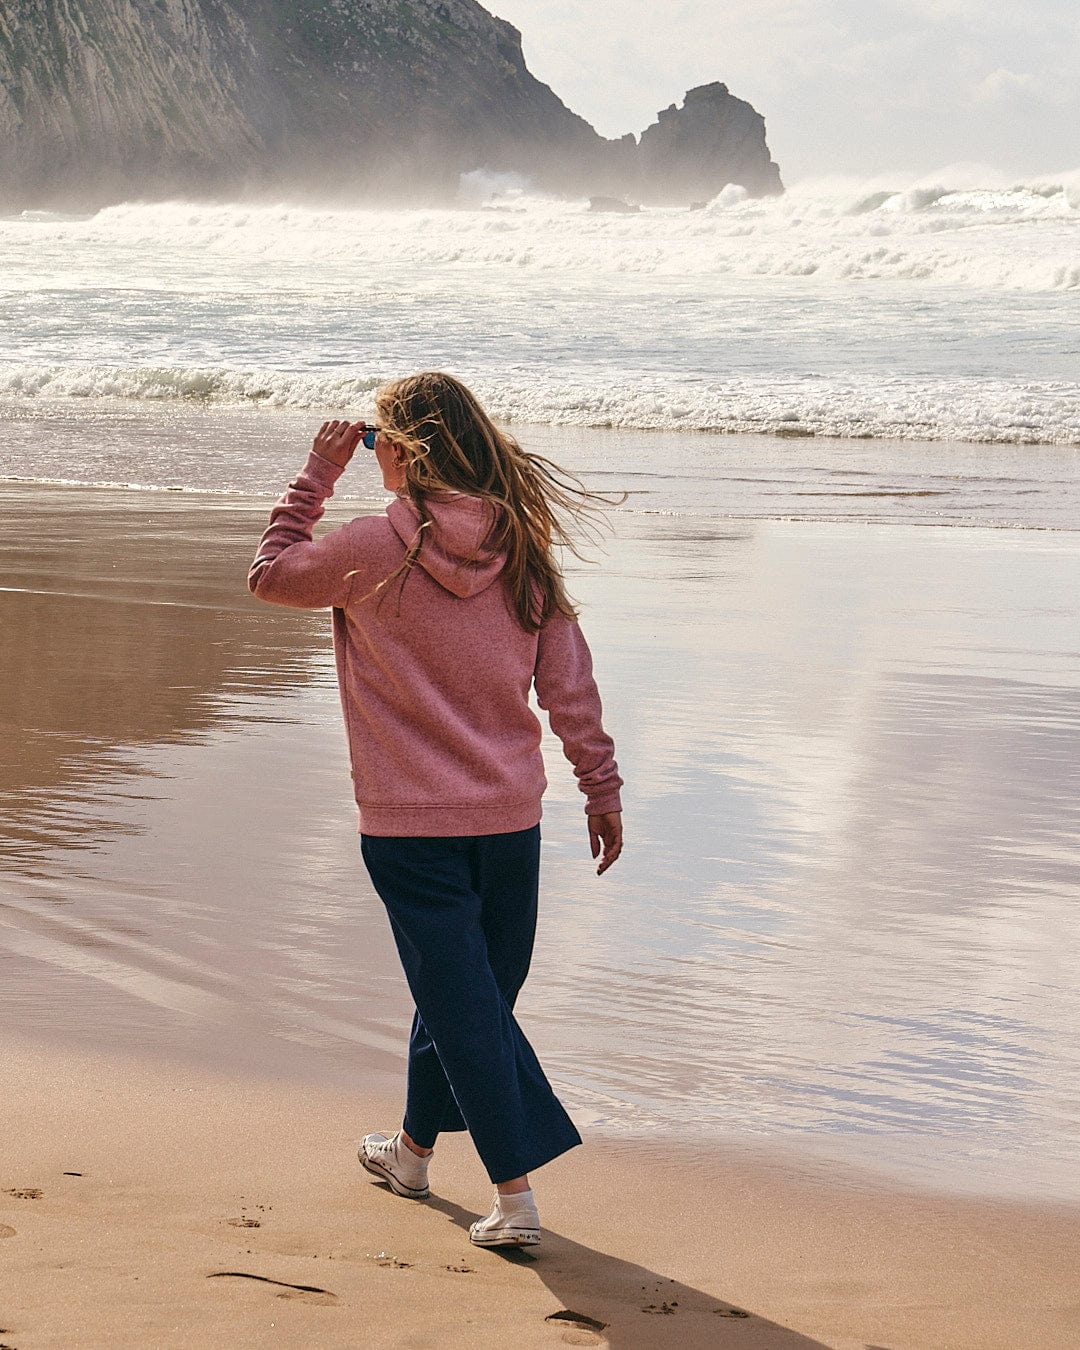 A woman wearing a Saltrock Galak - Womens Fur Lined Hoody - Mid Pink walking on a beach near the ocean.